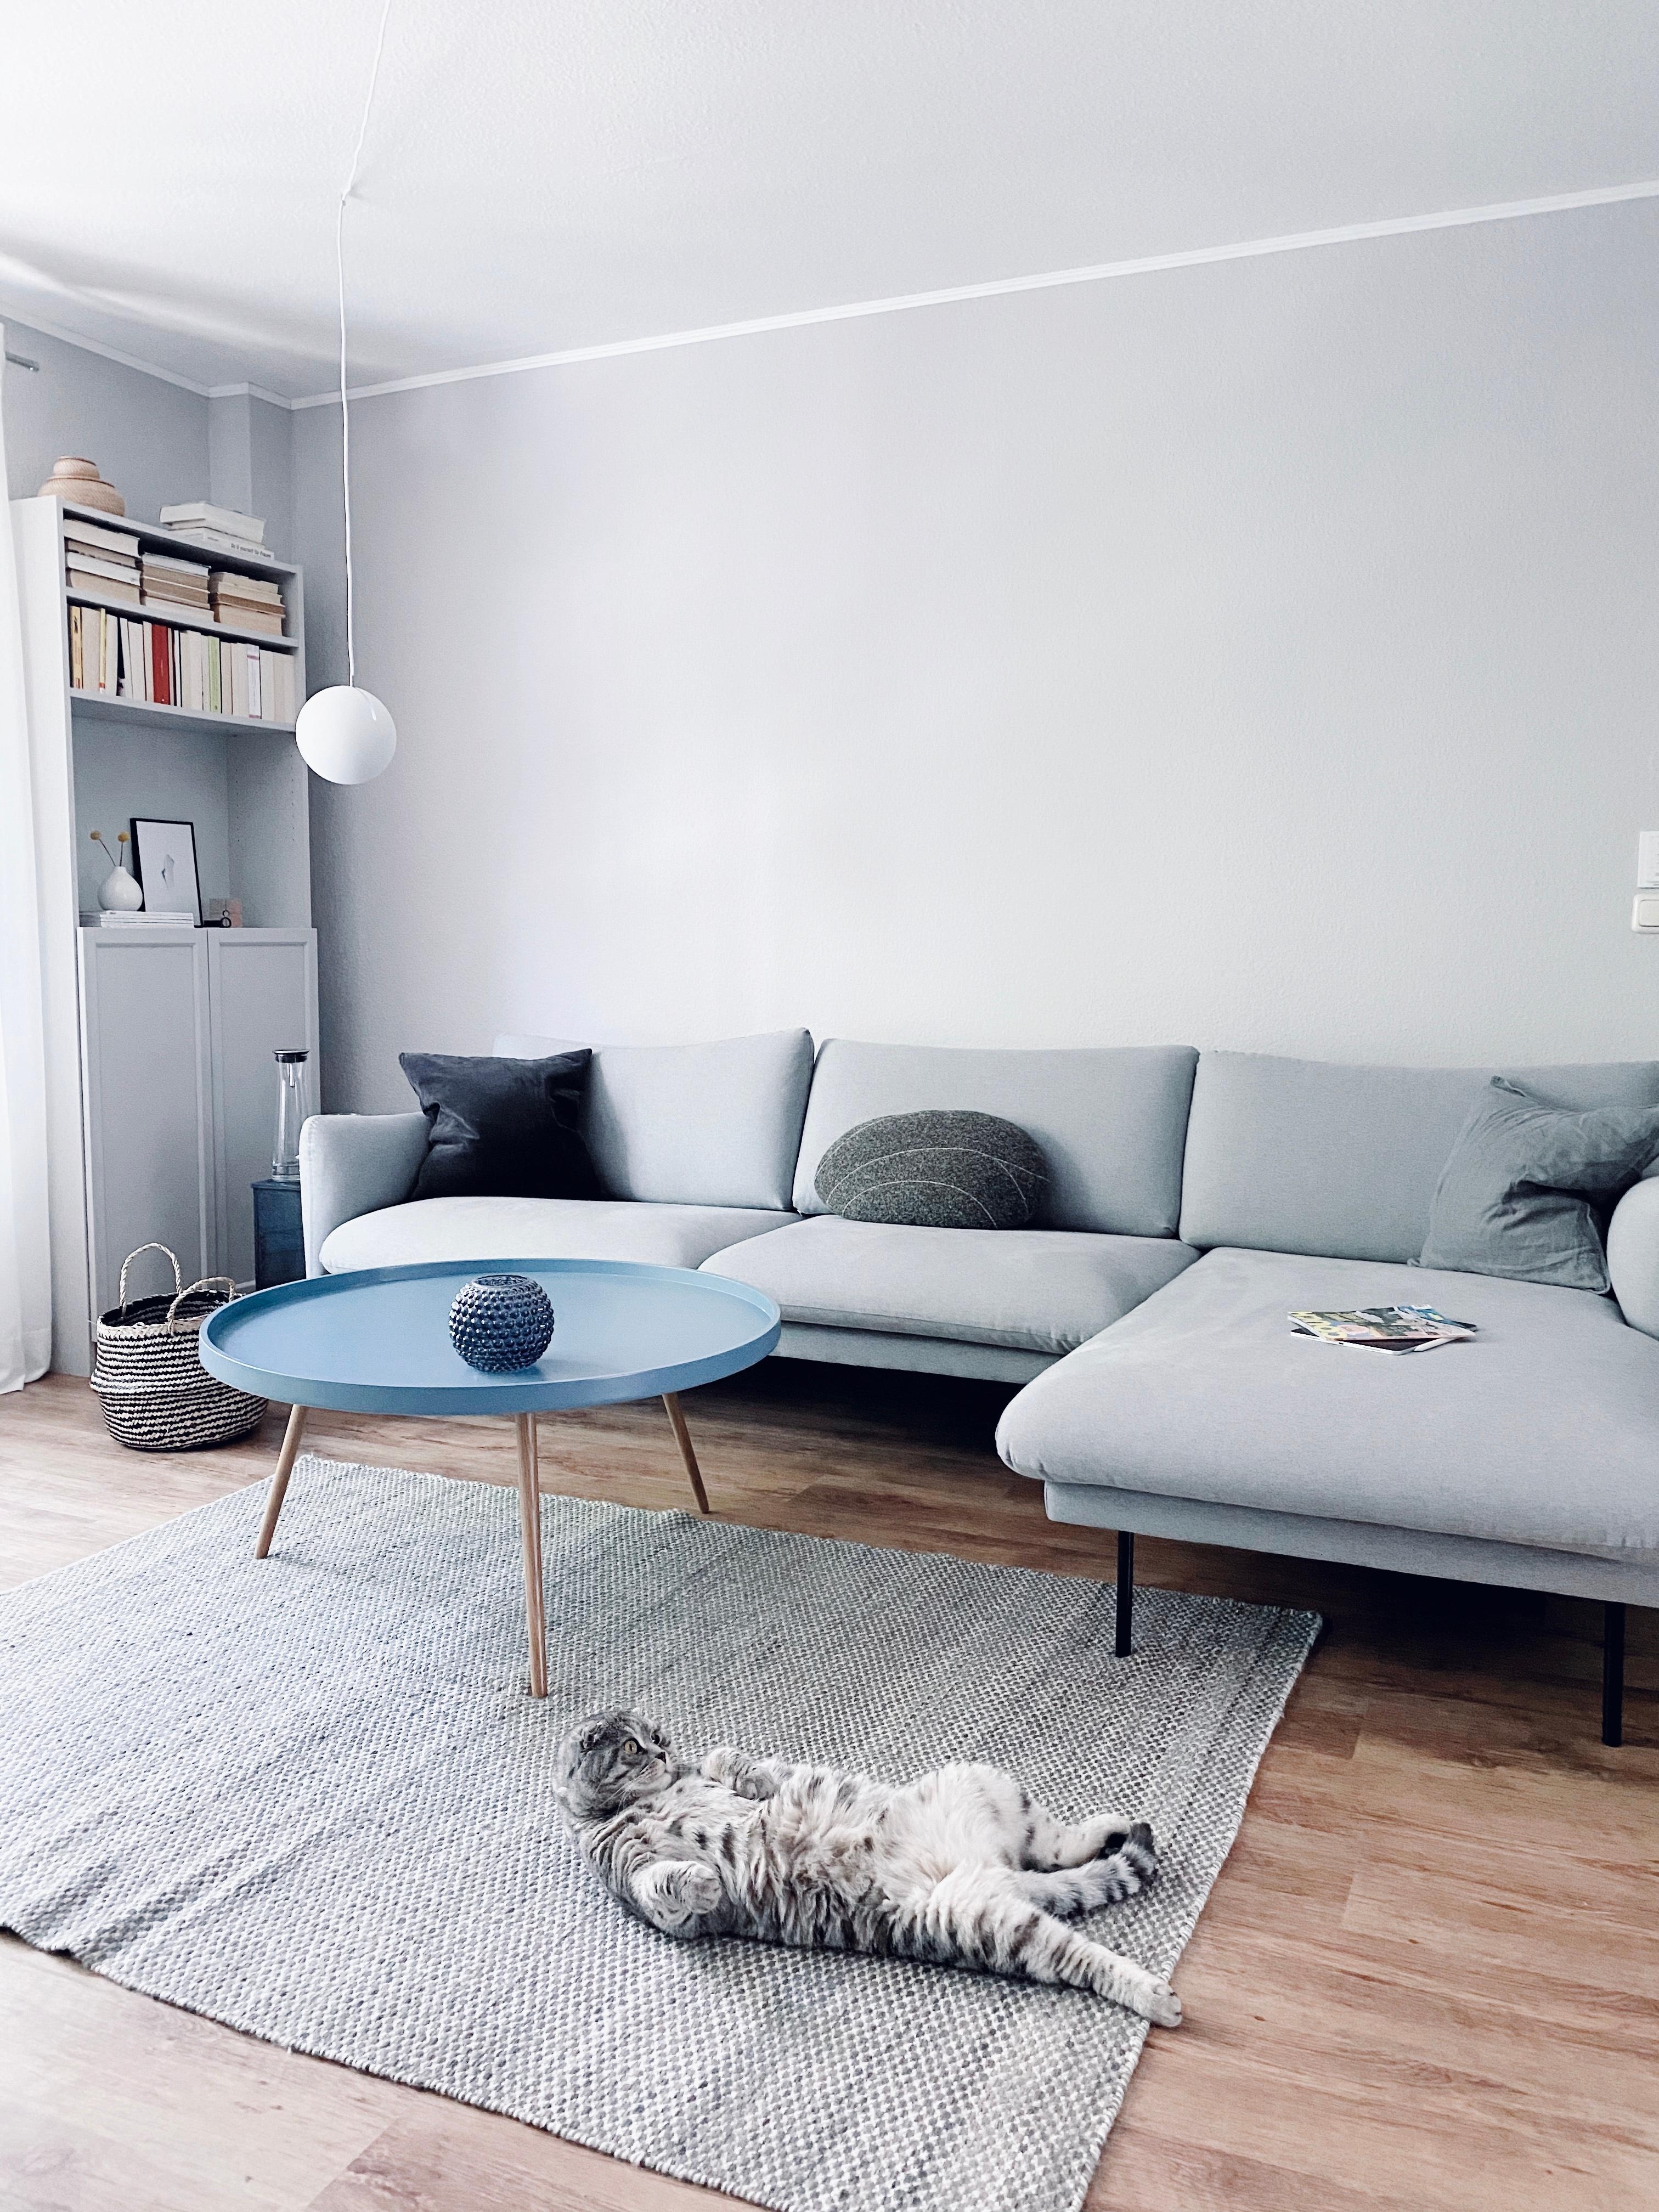 Der Versuch nach Quarantäne Sit-Ups zu machen 🙈 #catlover #interior #nordichome #murzikthegrumpyone #livingroom #hygge